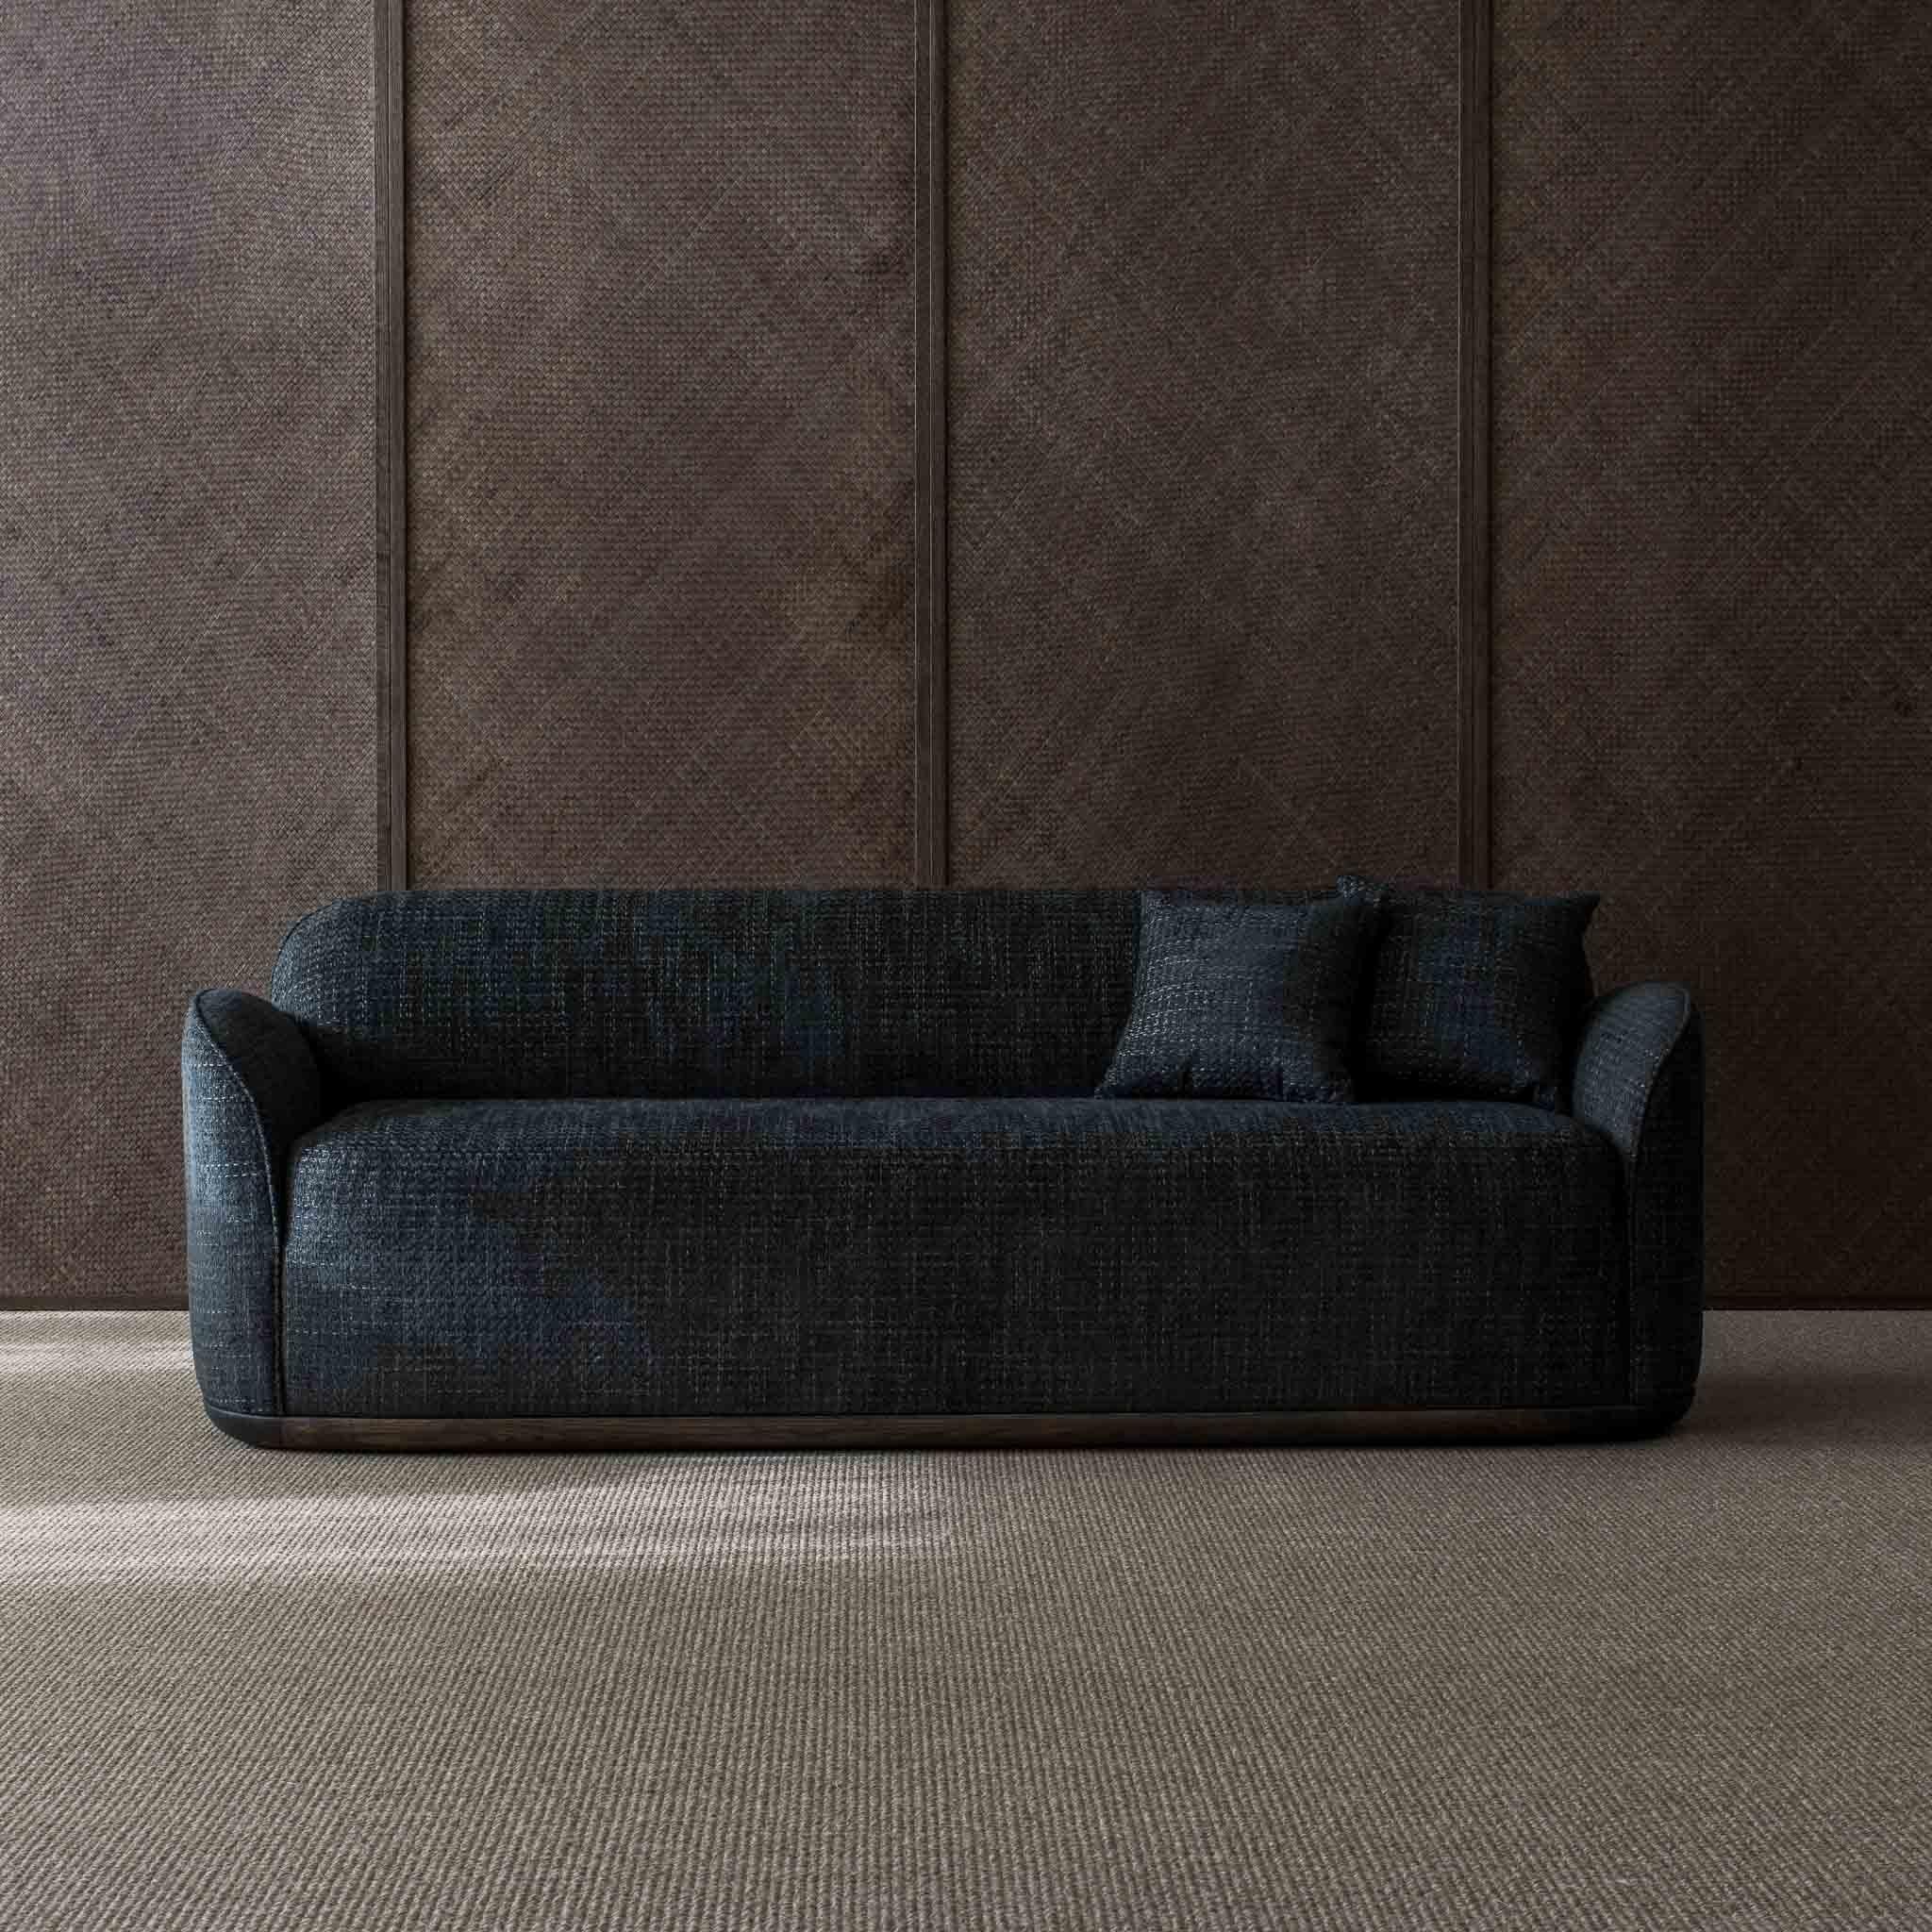 Scandinave moderne Canap Unio tapiss de tissu Pierre Frey Hanoi par Poiat en vente